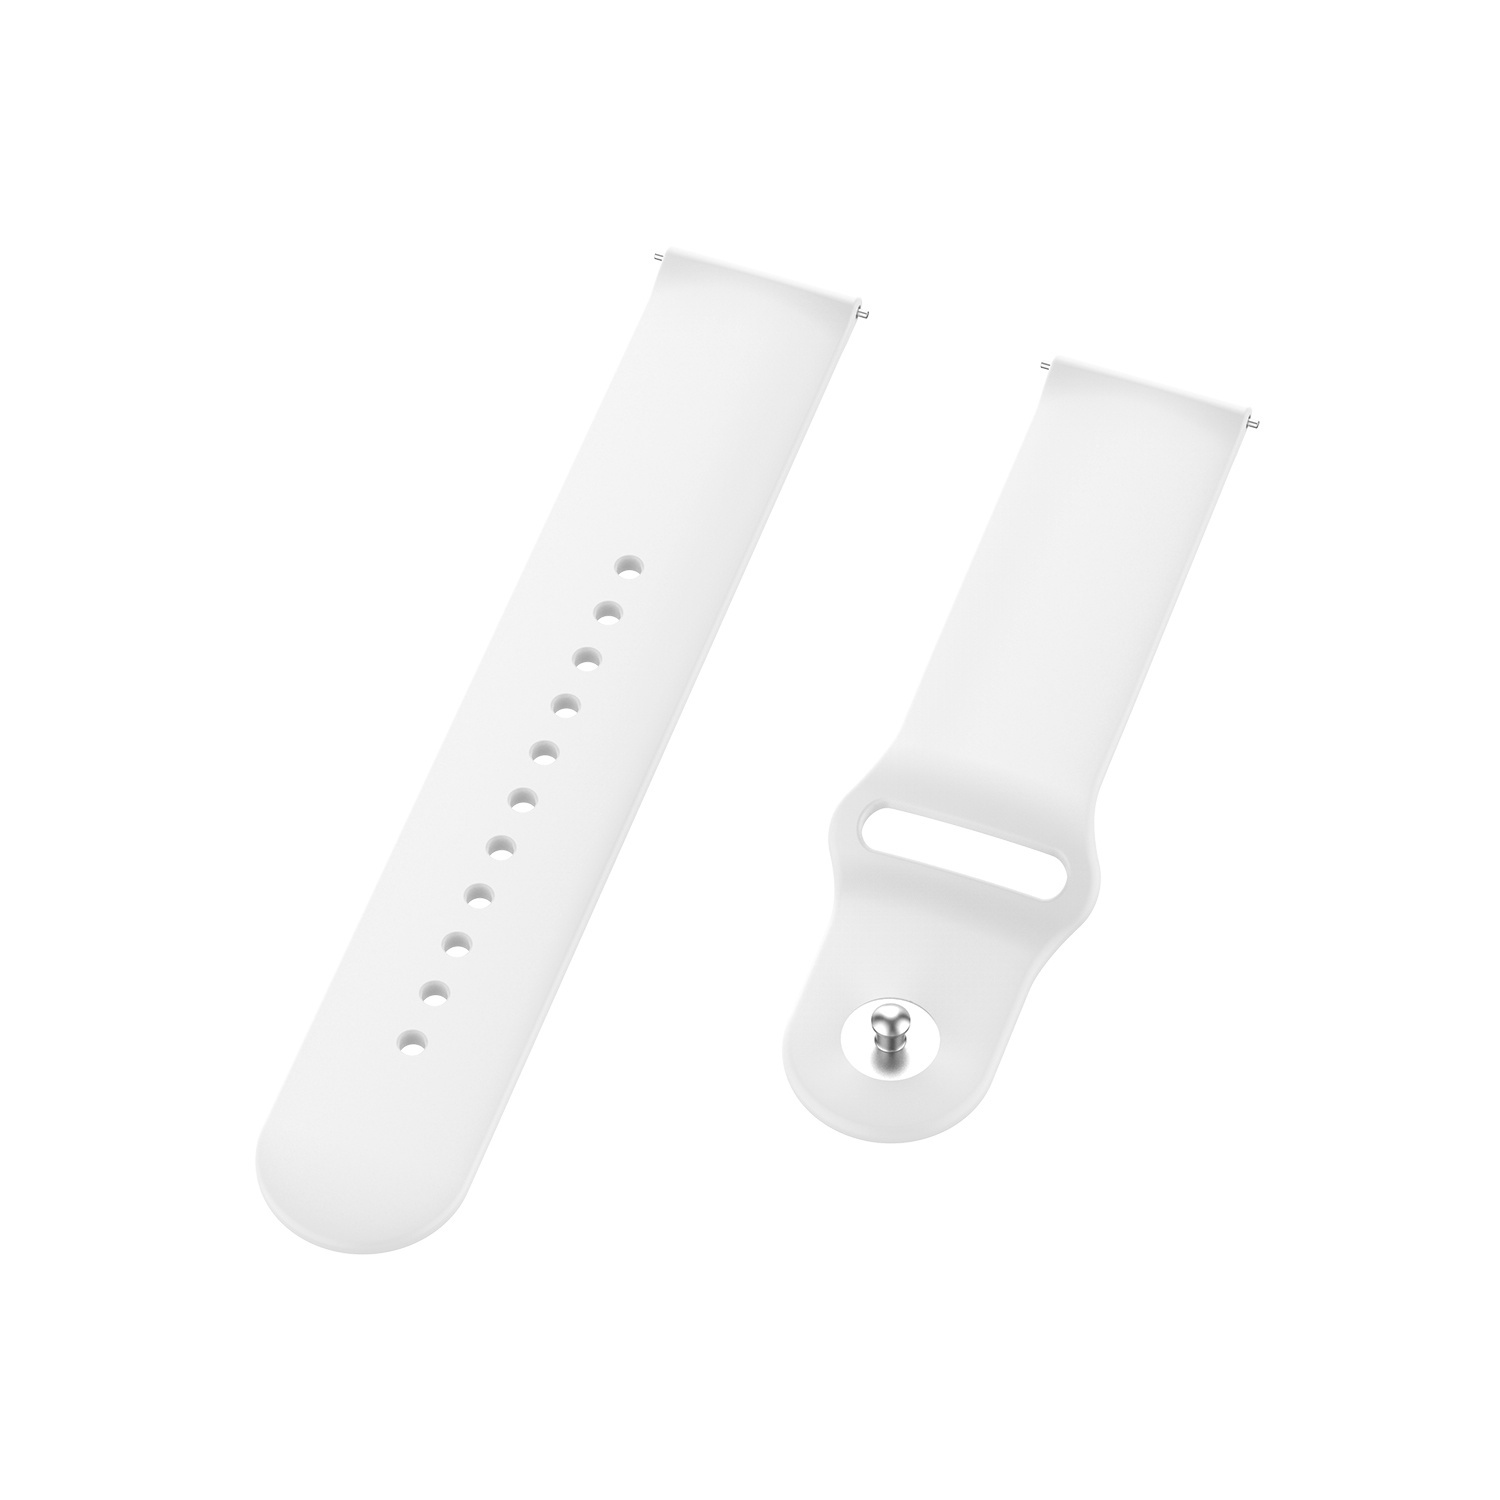 Bracelet sport en silicone Samsung Galaxy Watch - blanc